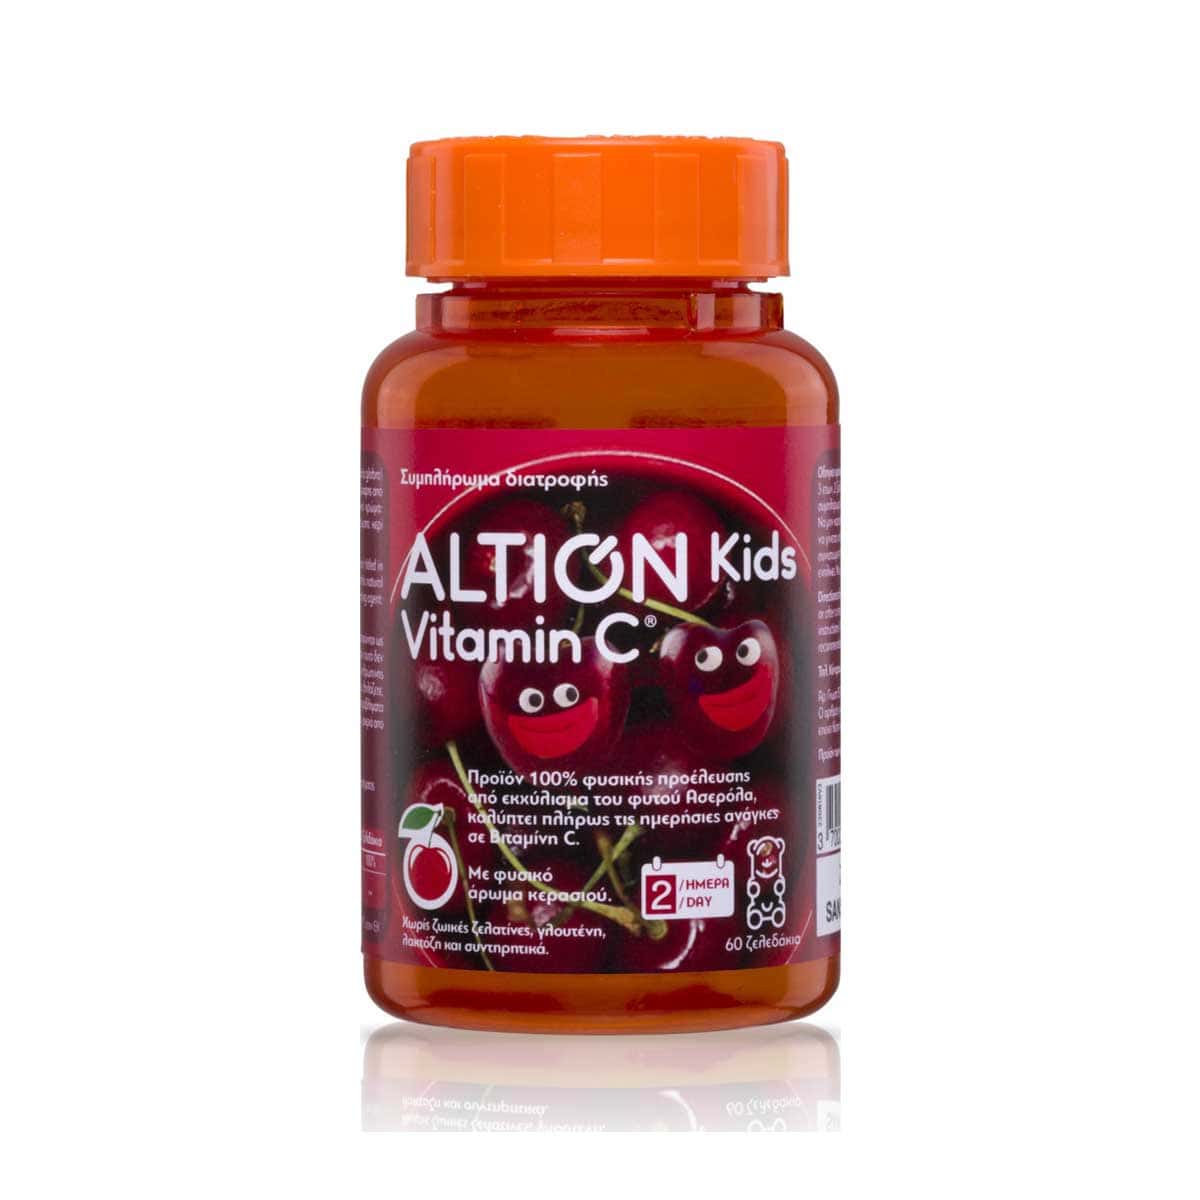 Altion-Kids-Vitaminc-C-60-masemenes-tampletes-3700225602443